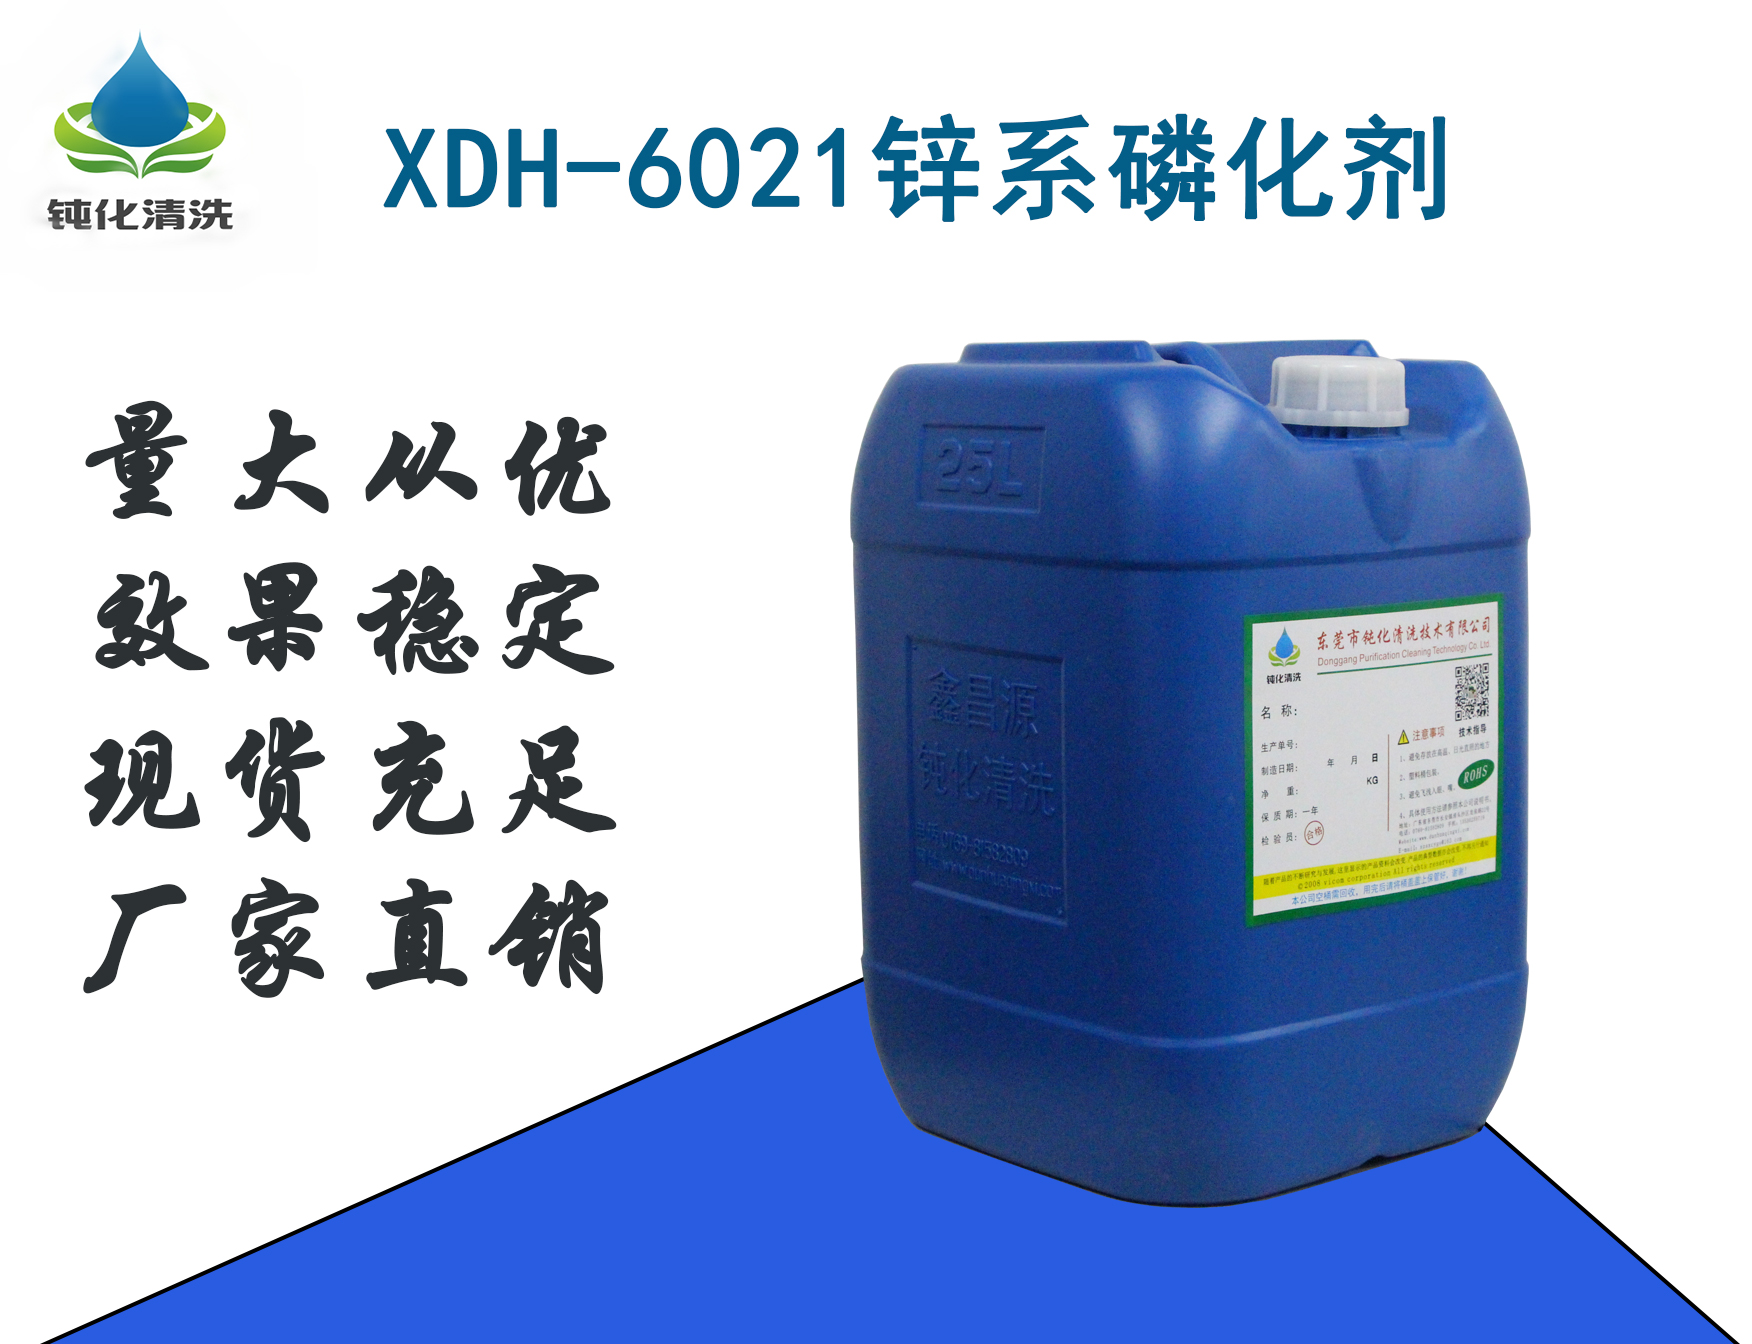 铝材锌系磷化液XDH-6021